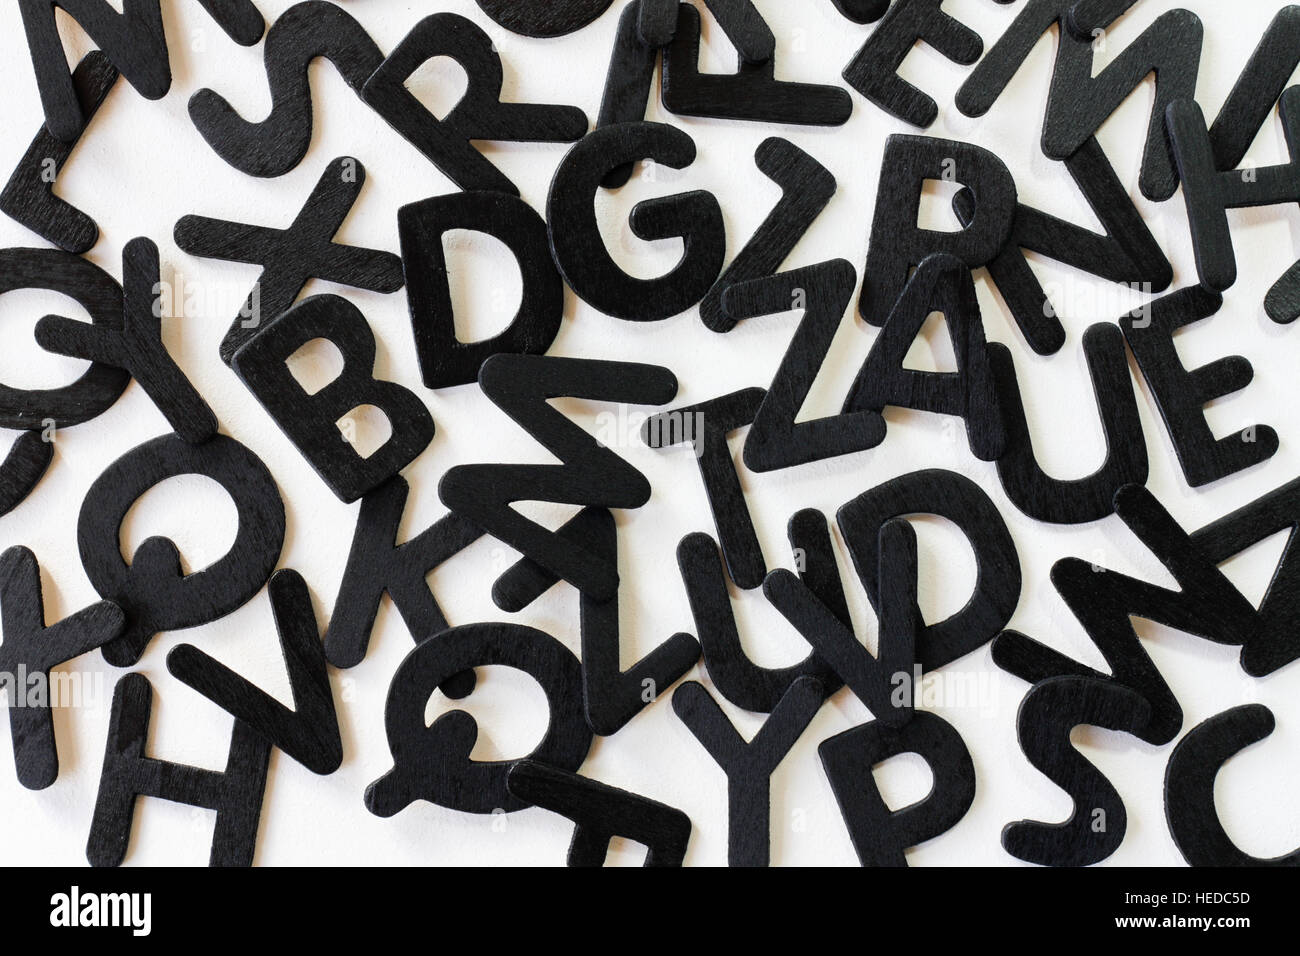 Lettres alphabet aléatoire sur un fond blanc pour illustrer le concept de l'alphabétisation, de la littérature et de mots de code. Banque D'Images